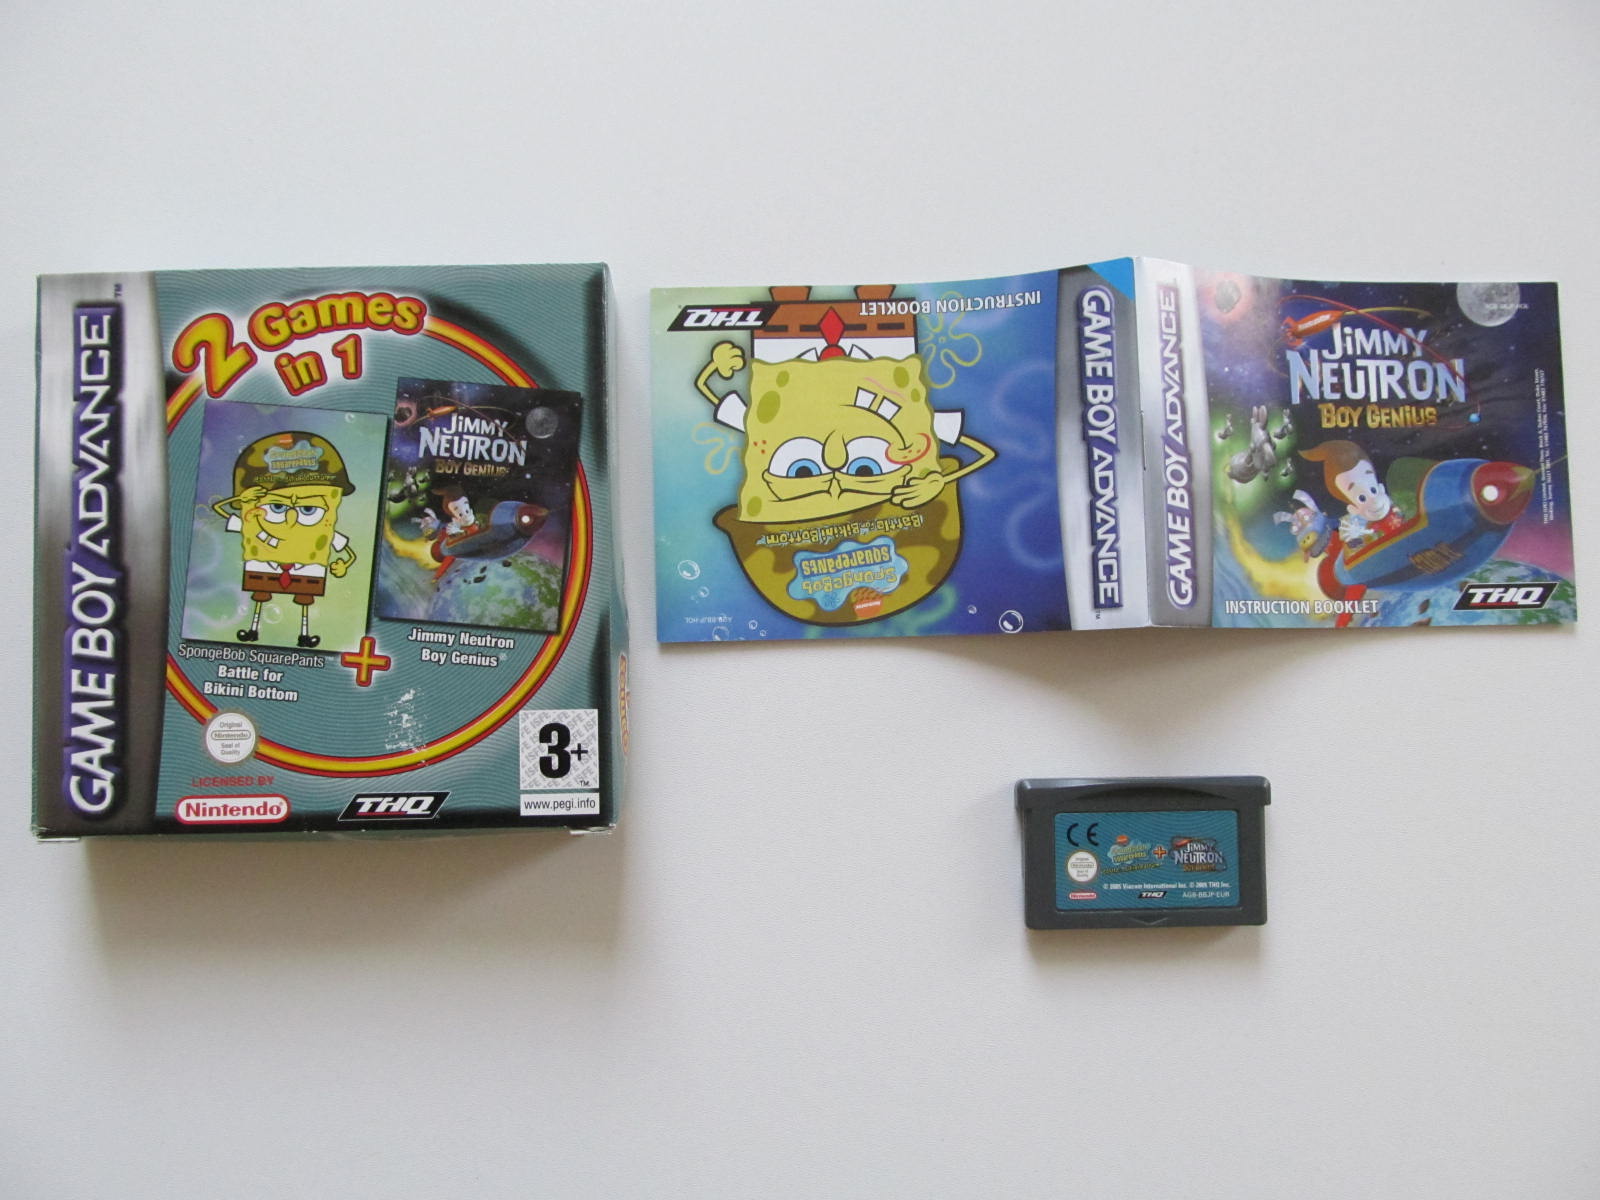 2 Games in 1 - Spongebob + Jimmy Neutron